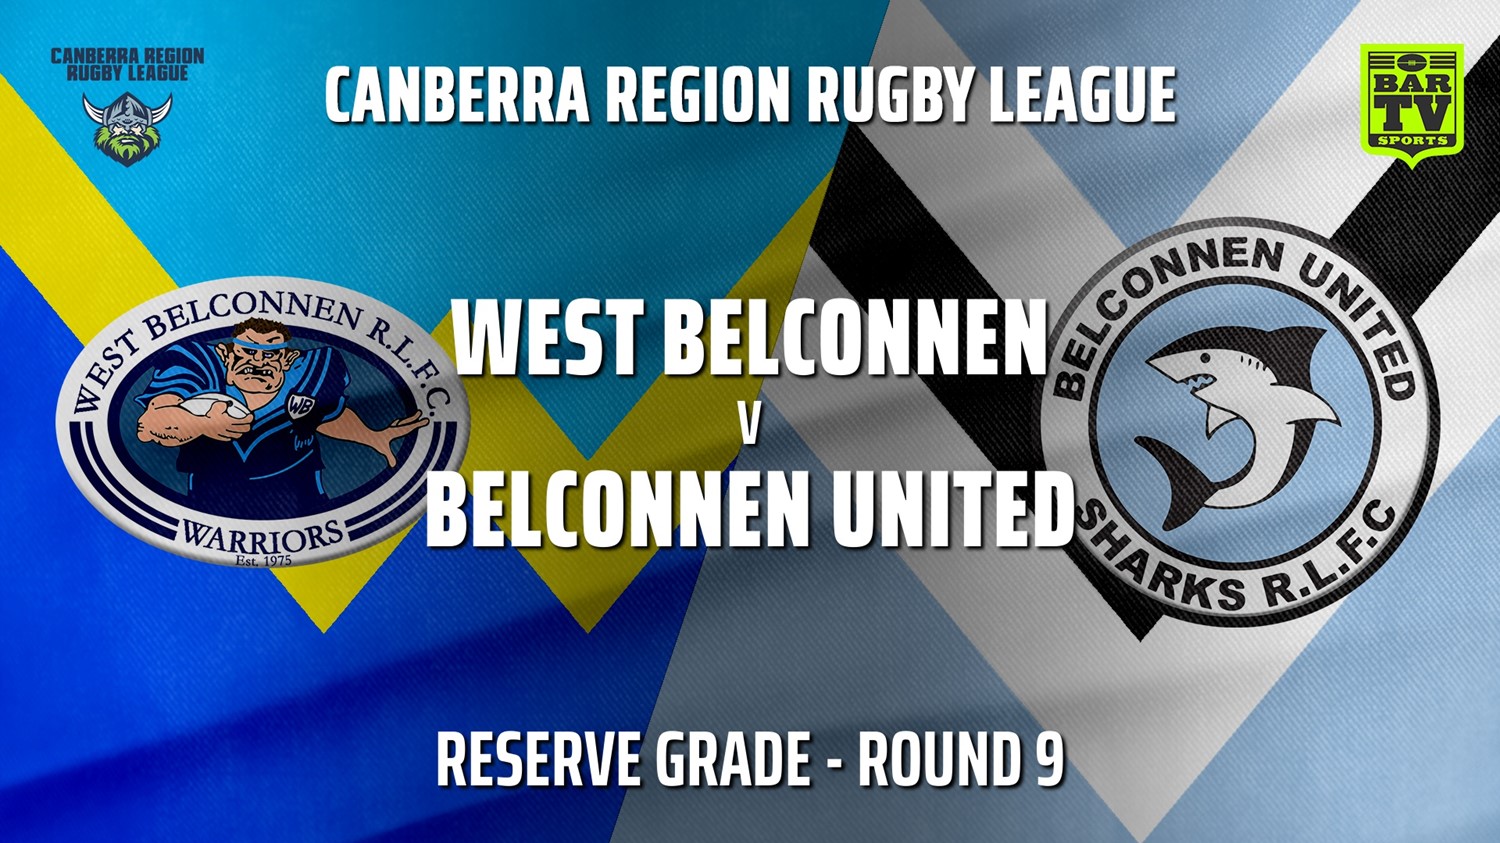 210620-Canberra Round 9 - Reserve Grade - West Belconnen Warriors v Belconnen United Sharks Slate Image